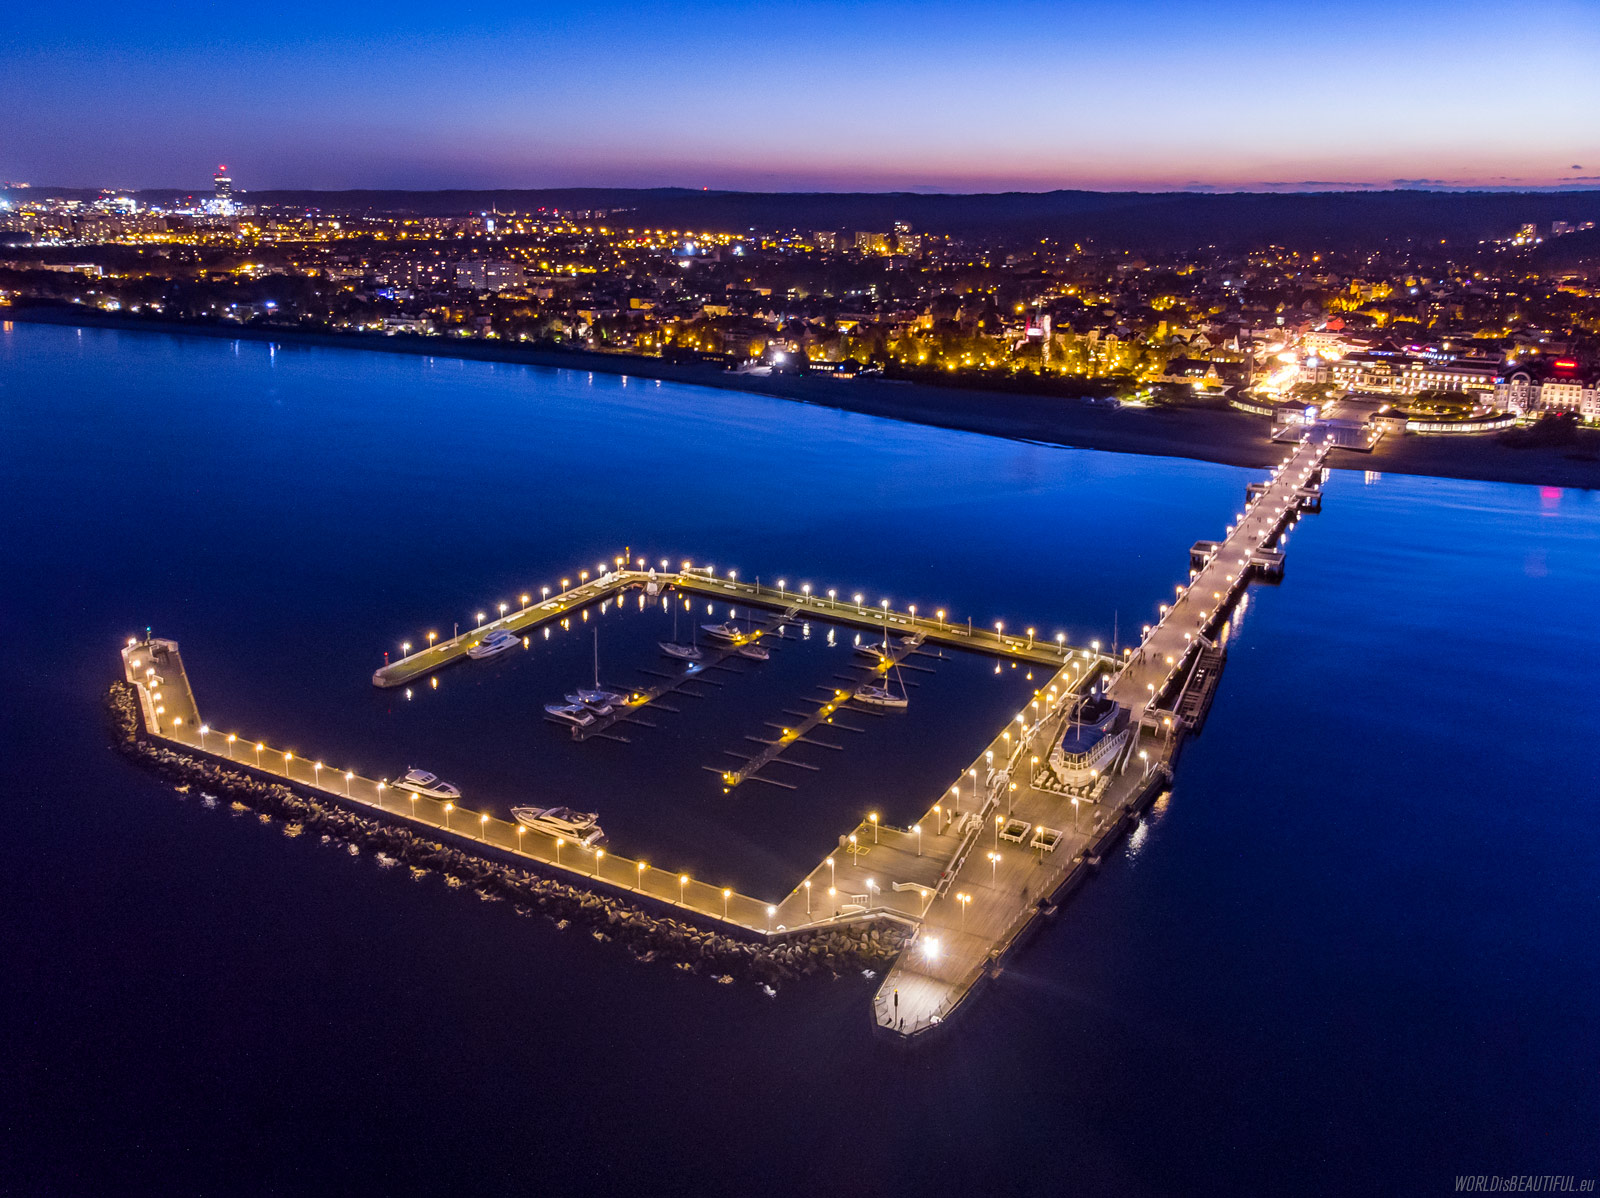 Sopot pier at night